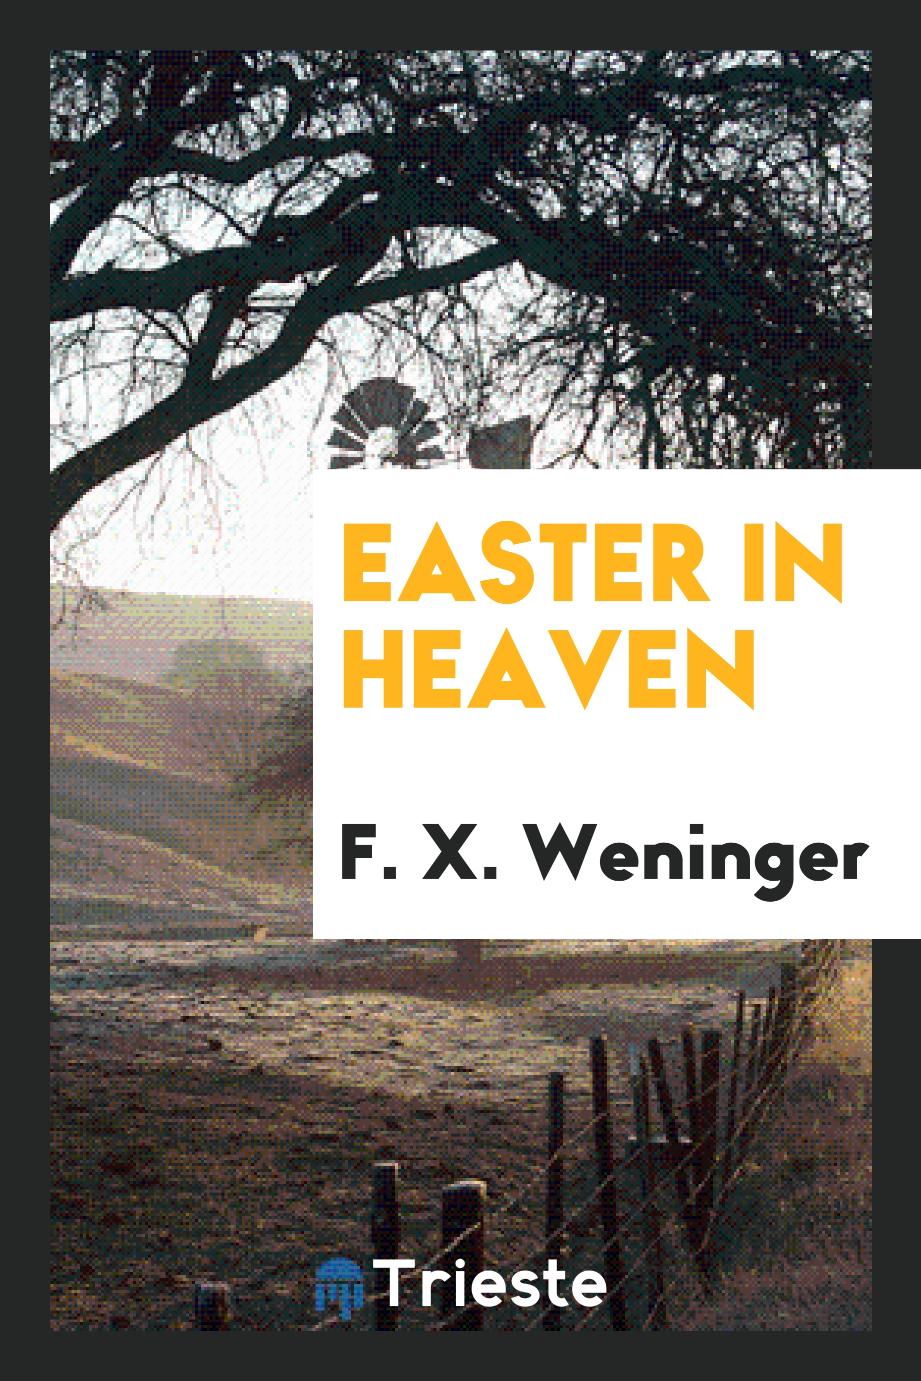 Easter in heaven